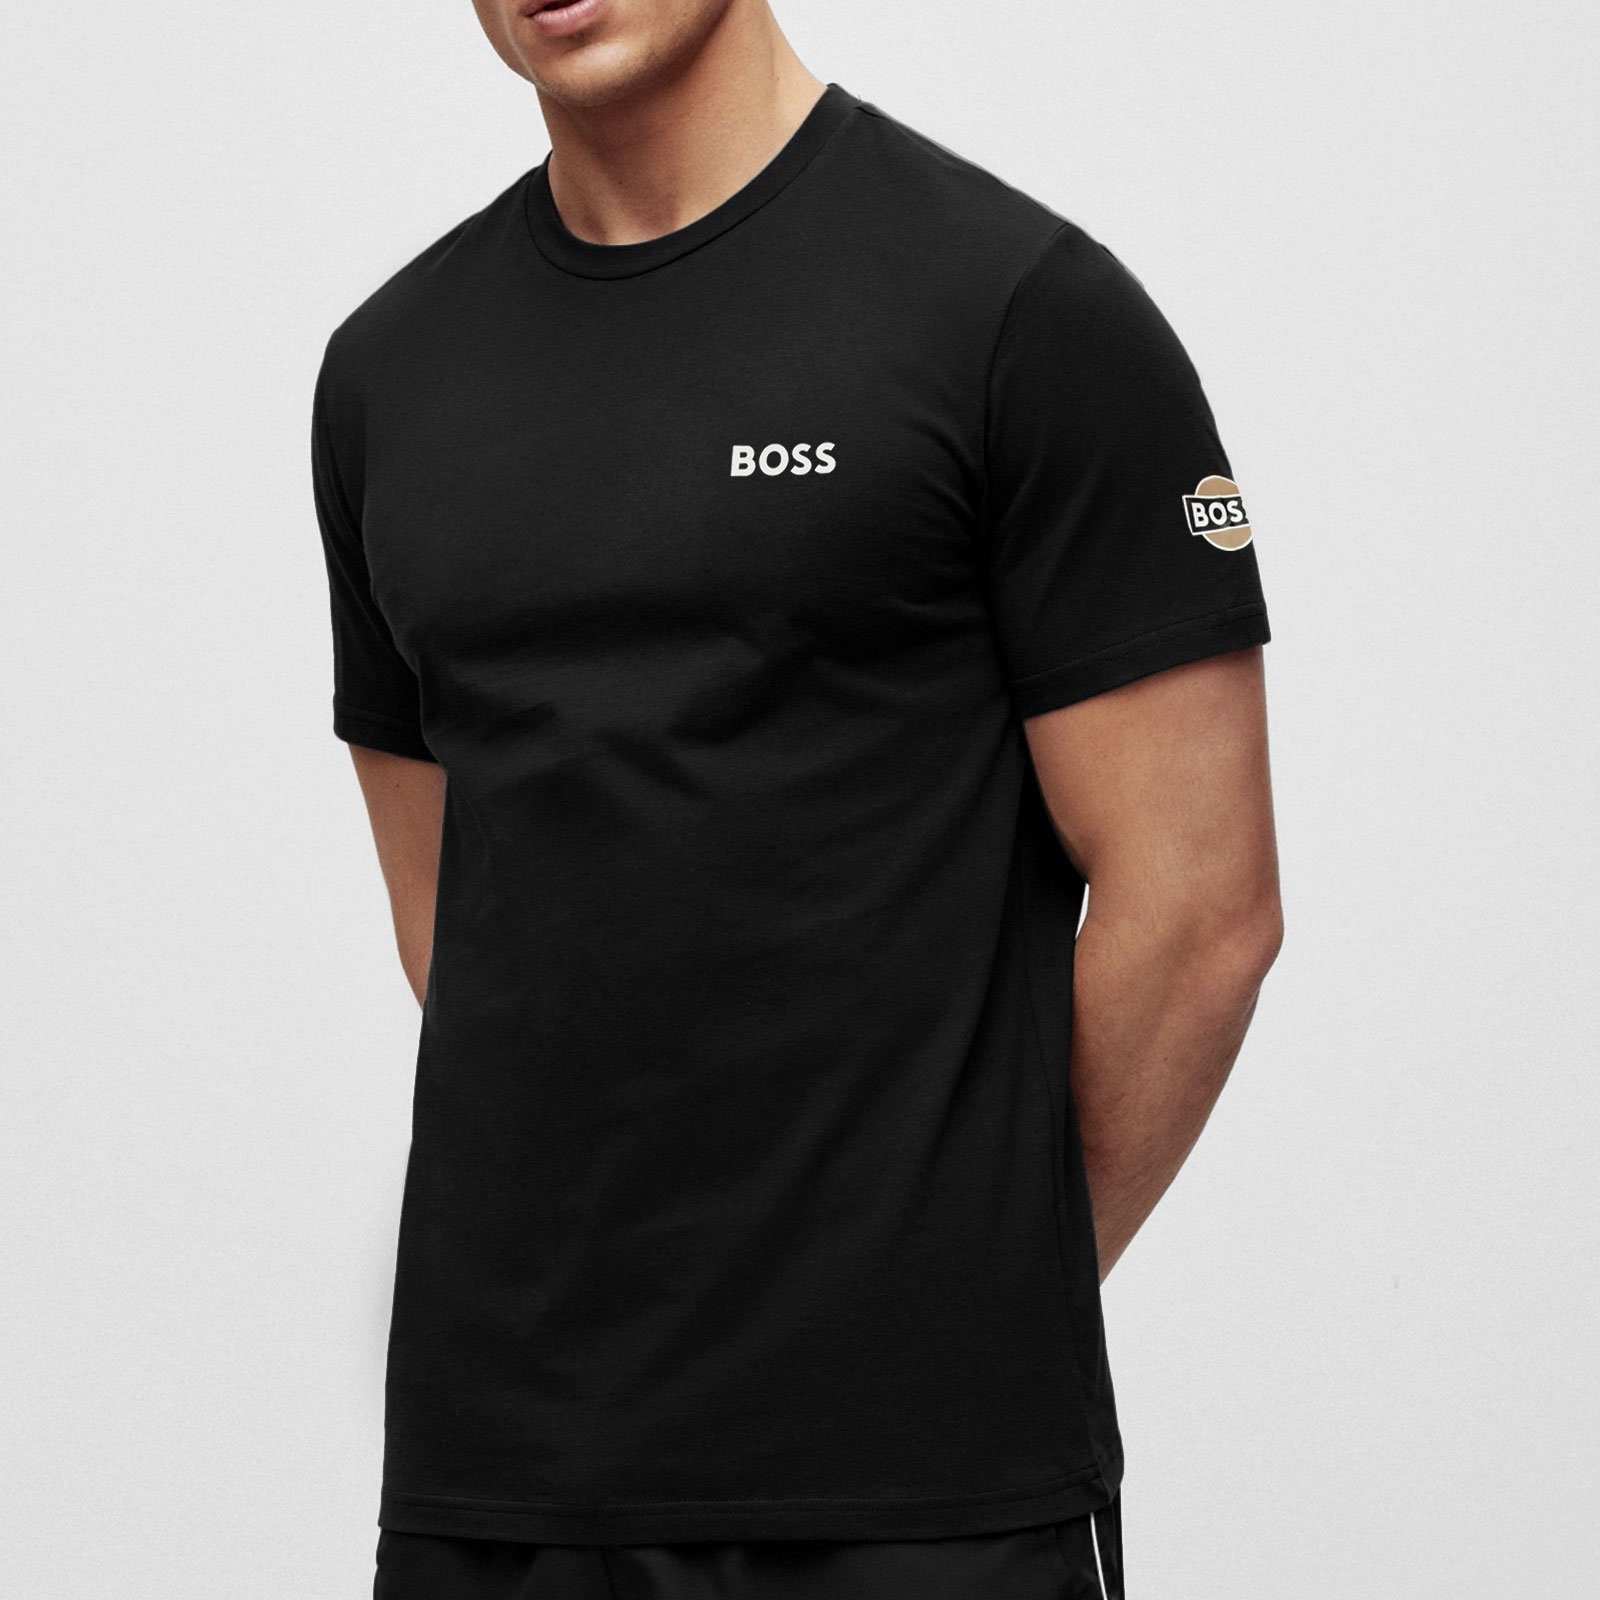 Racing Brust und auf Arm mit Boss-Logo T-Shirt Kurzarmshirt BOSS